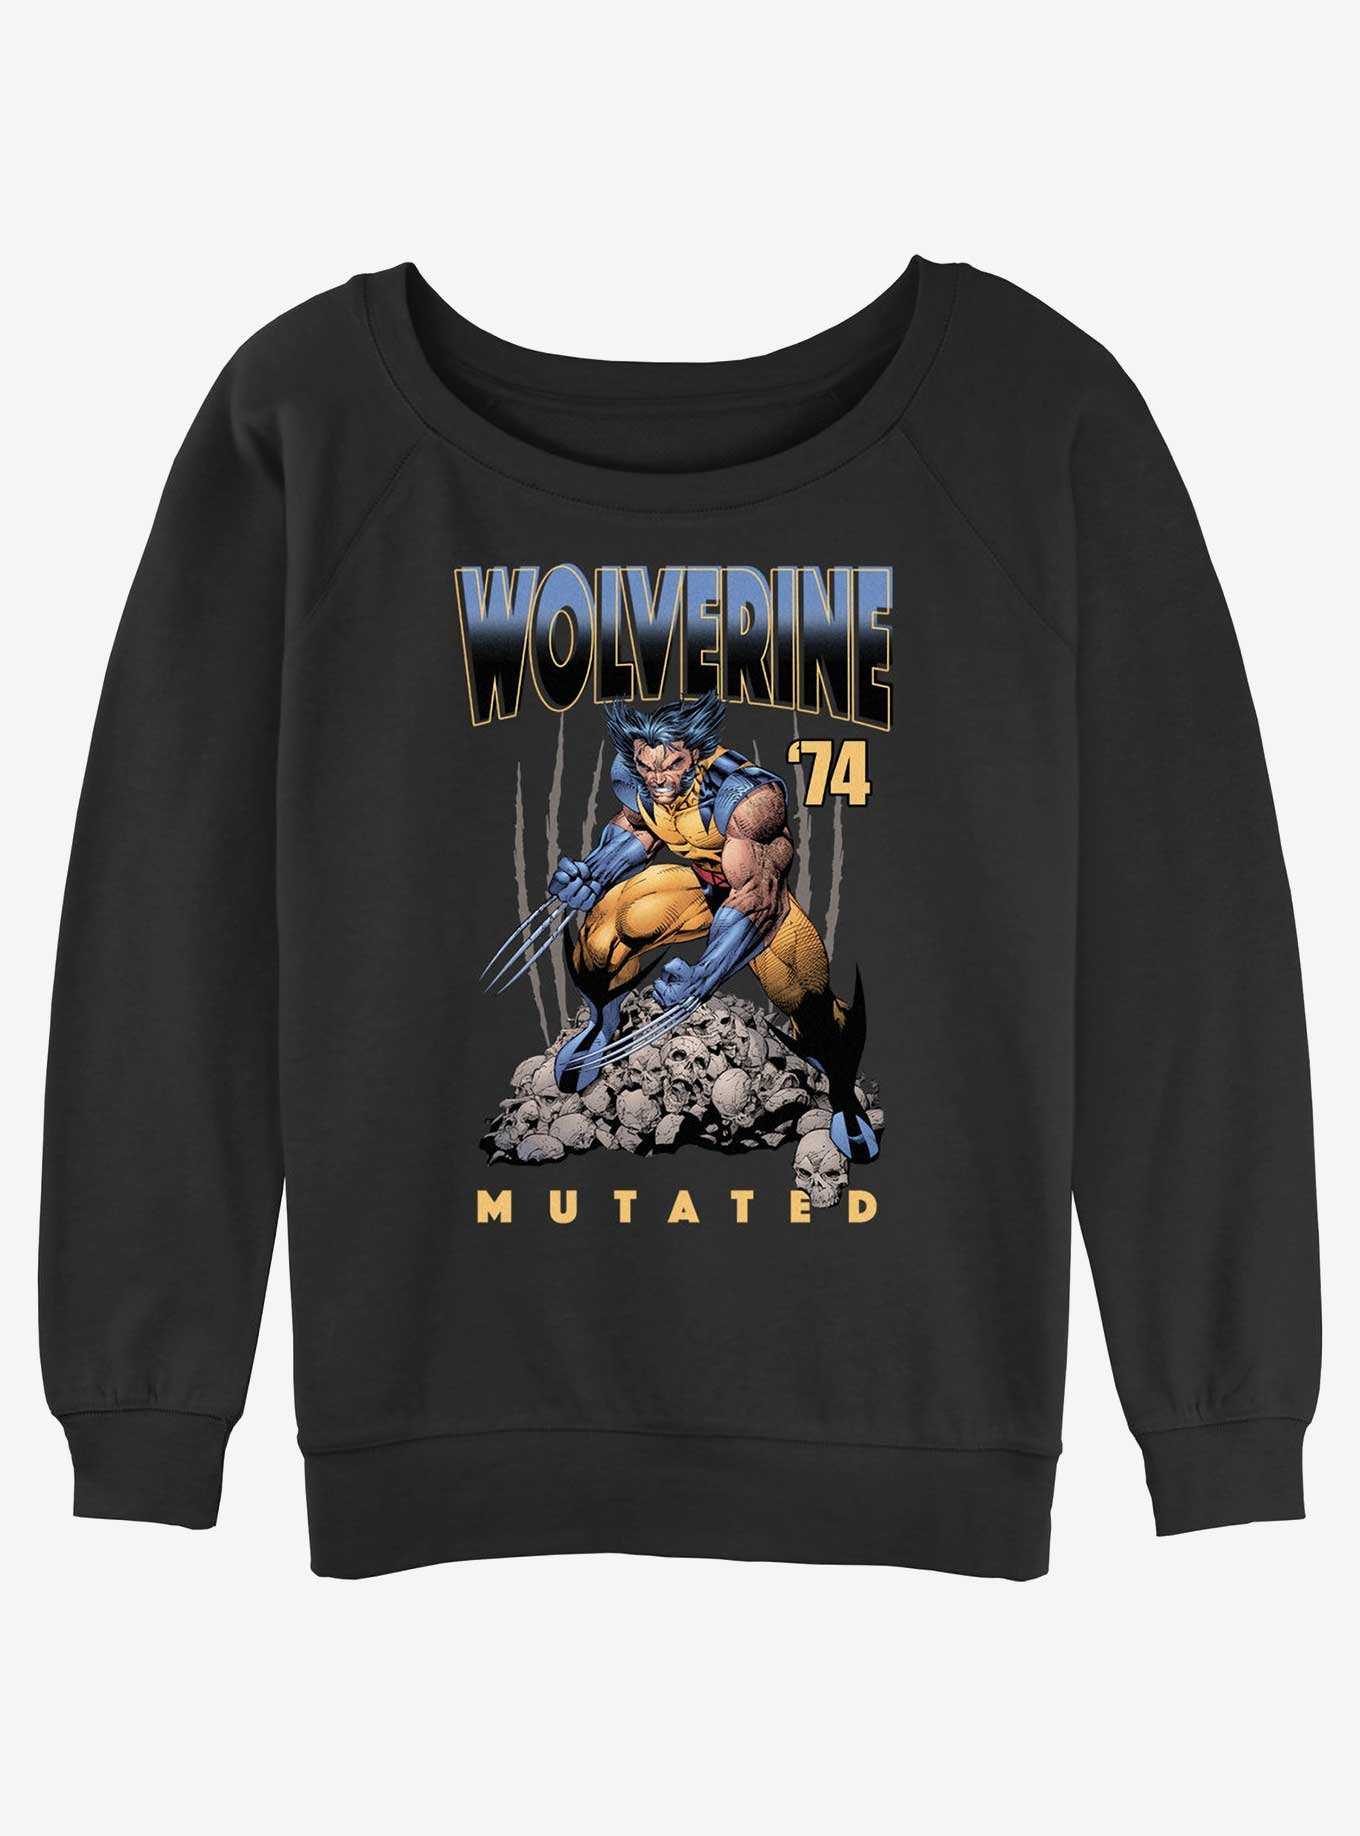 Wolverine Mutated Girls Slouchy Sweatshirt, , hi-res